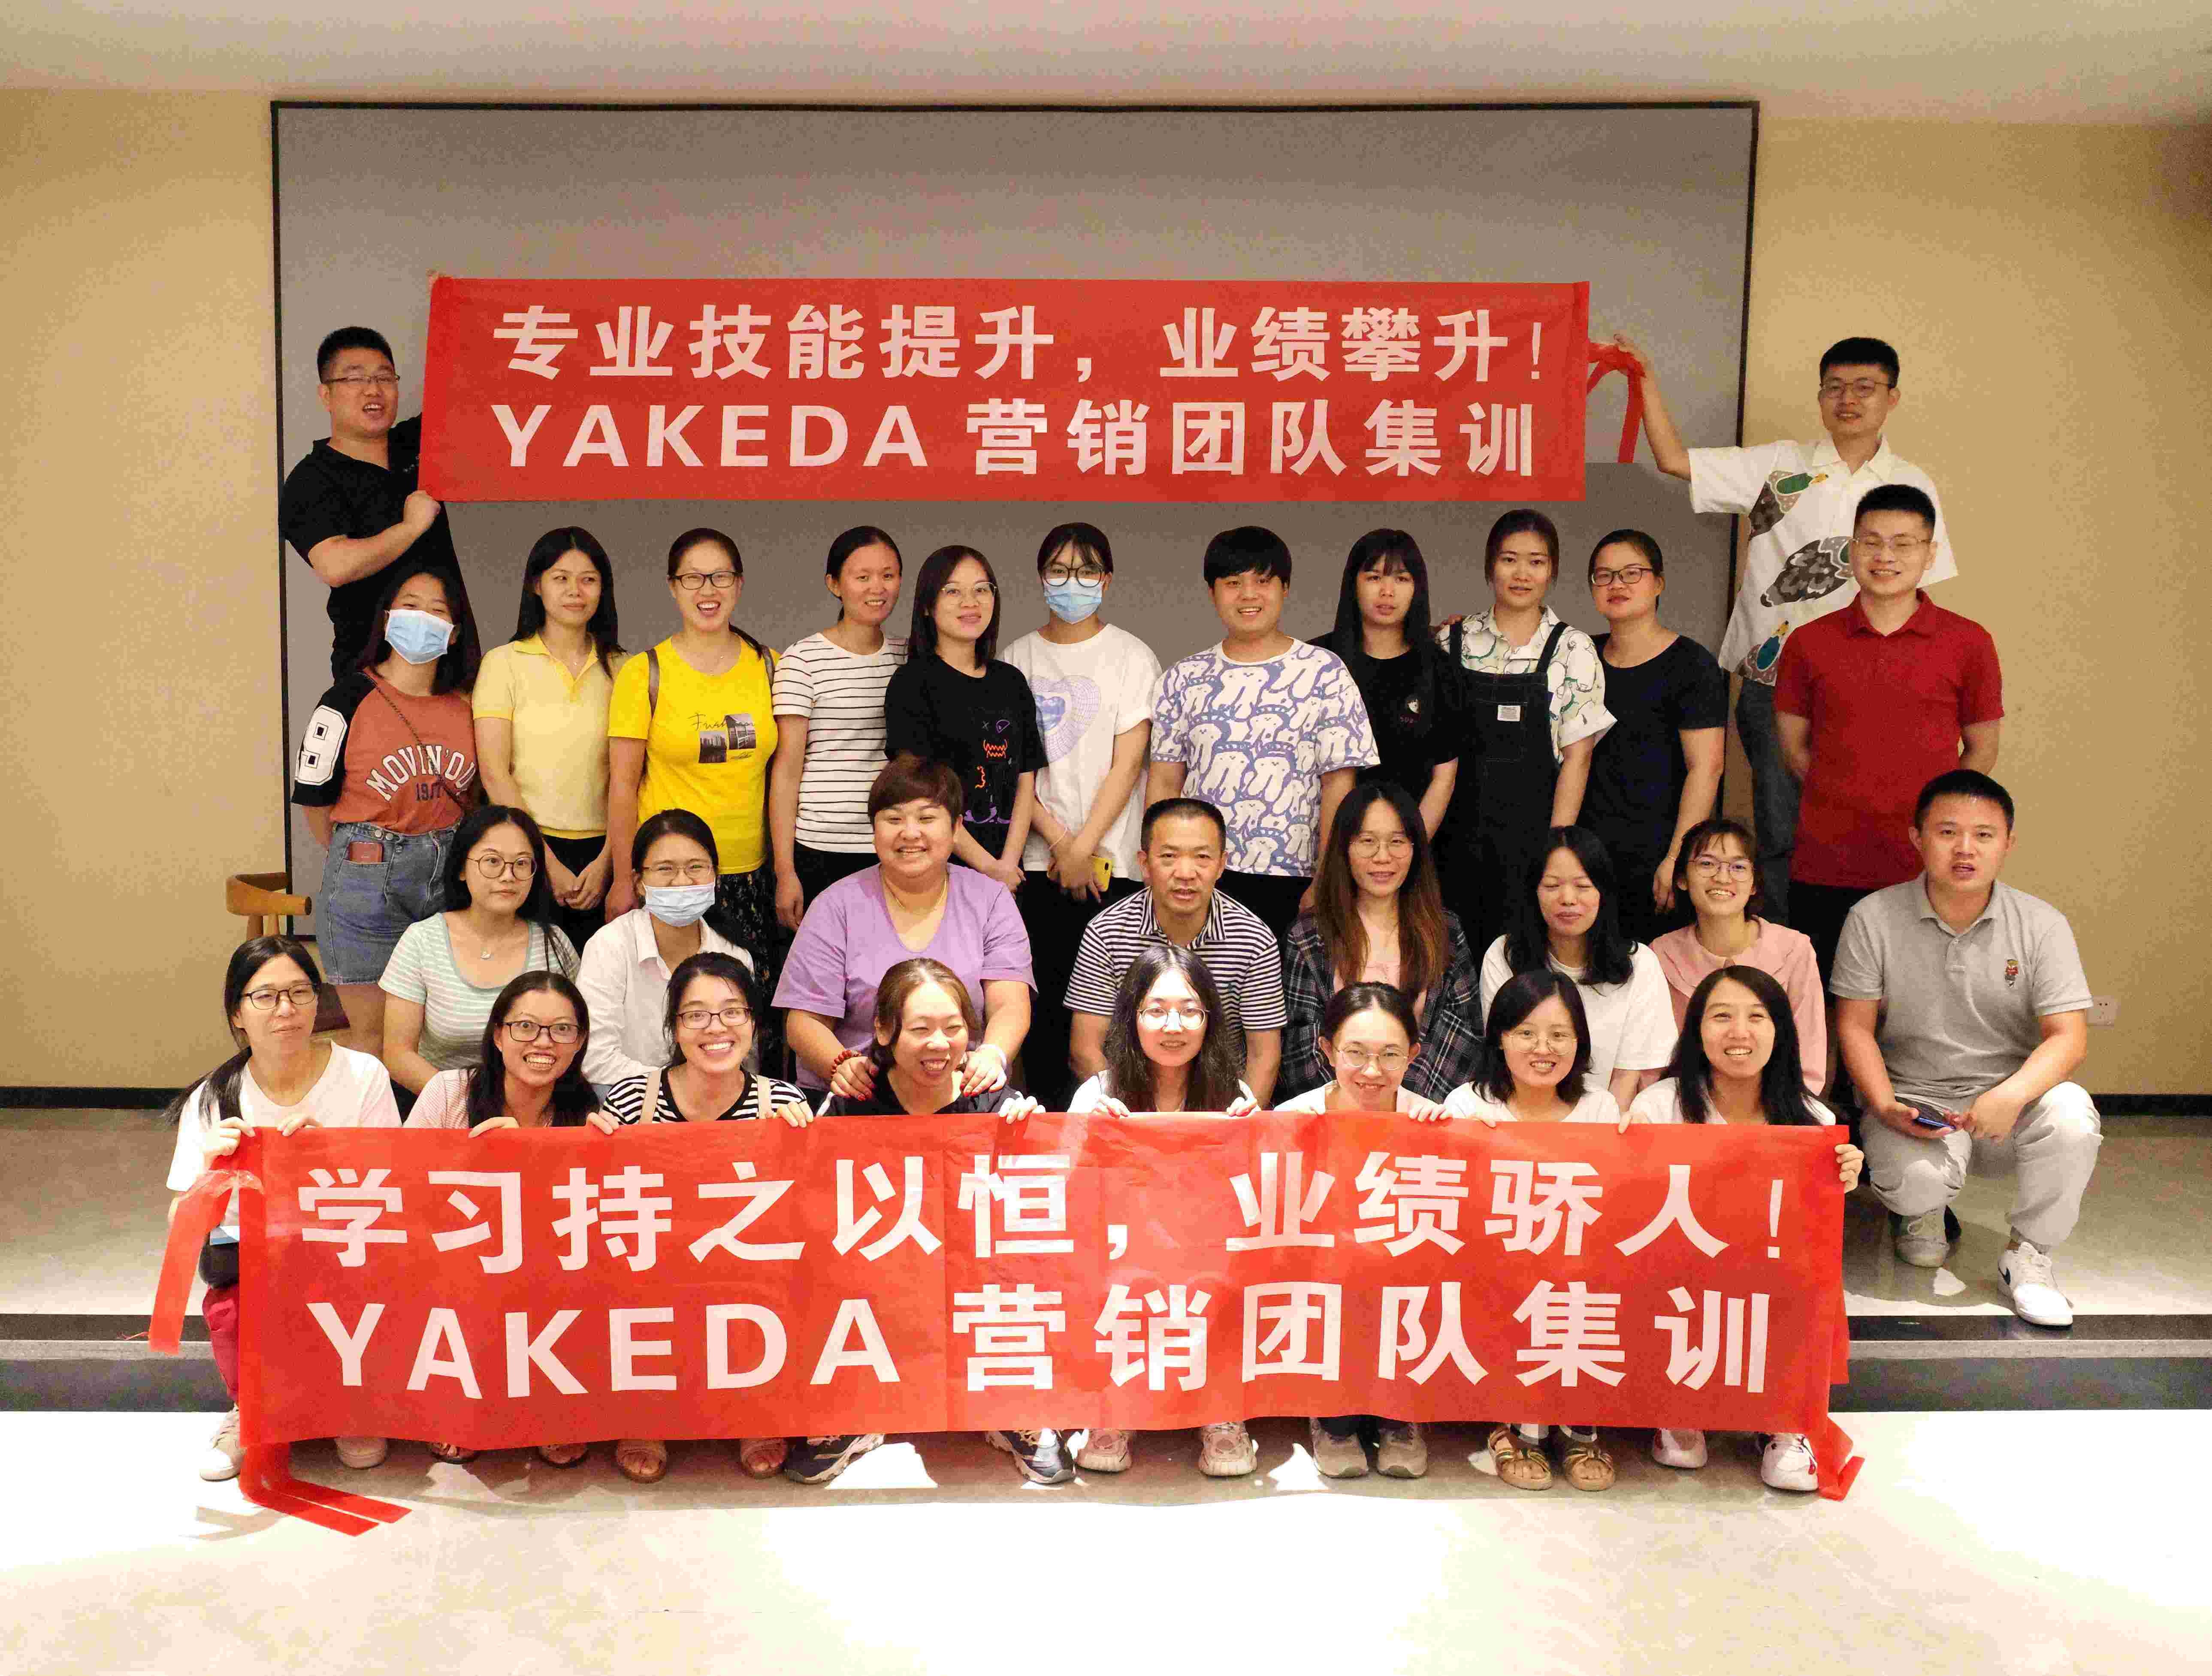 2021 | Treinamento intensivo da equipe de marketing da Yakeda